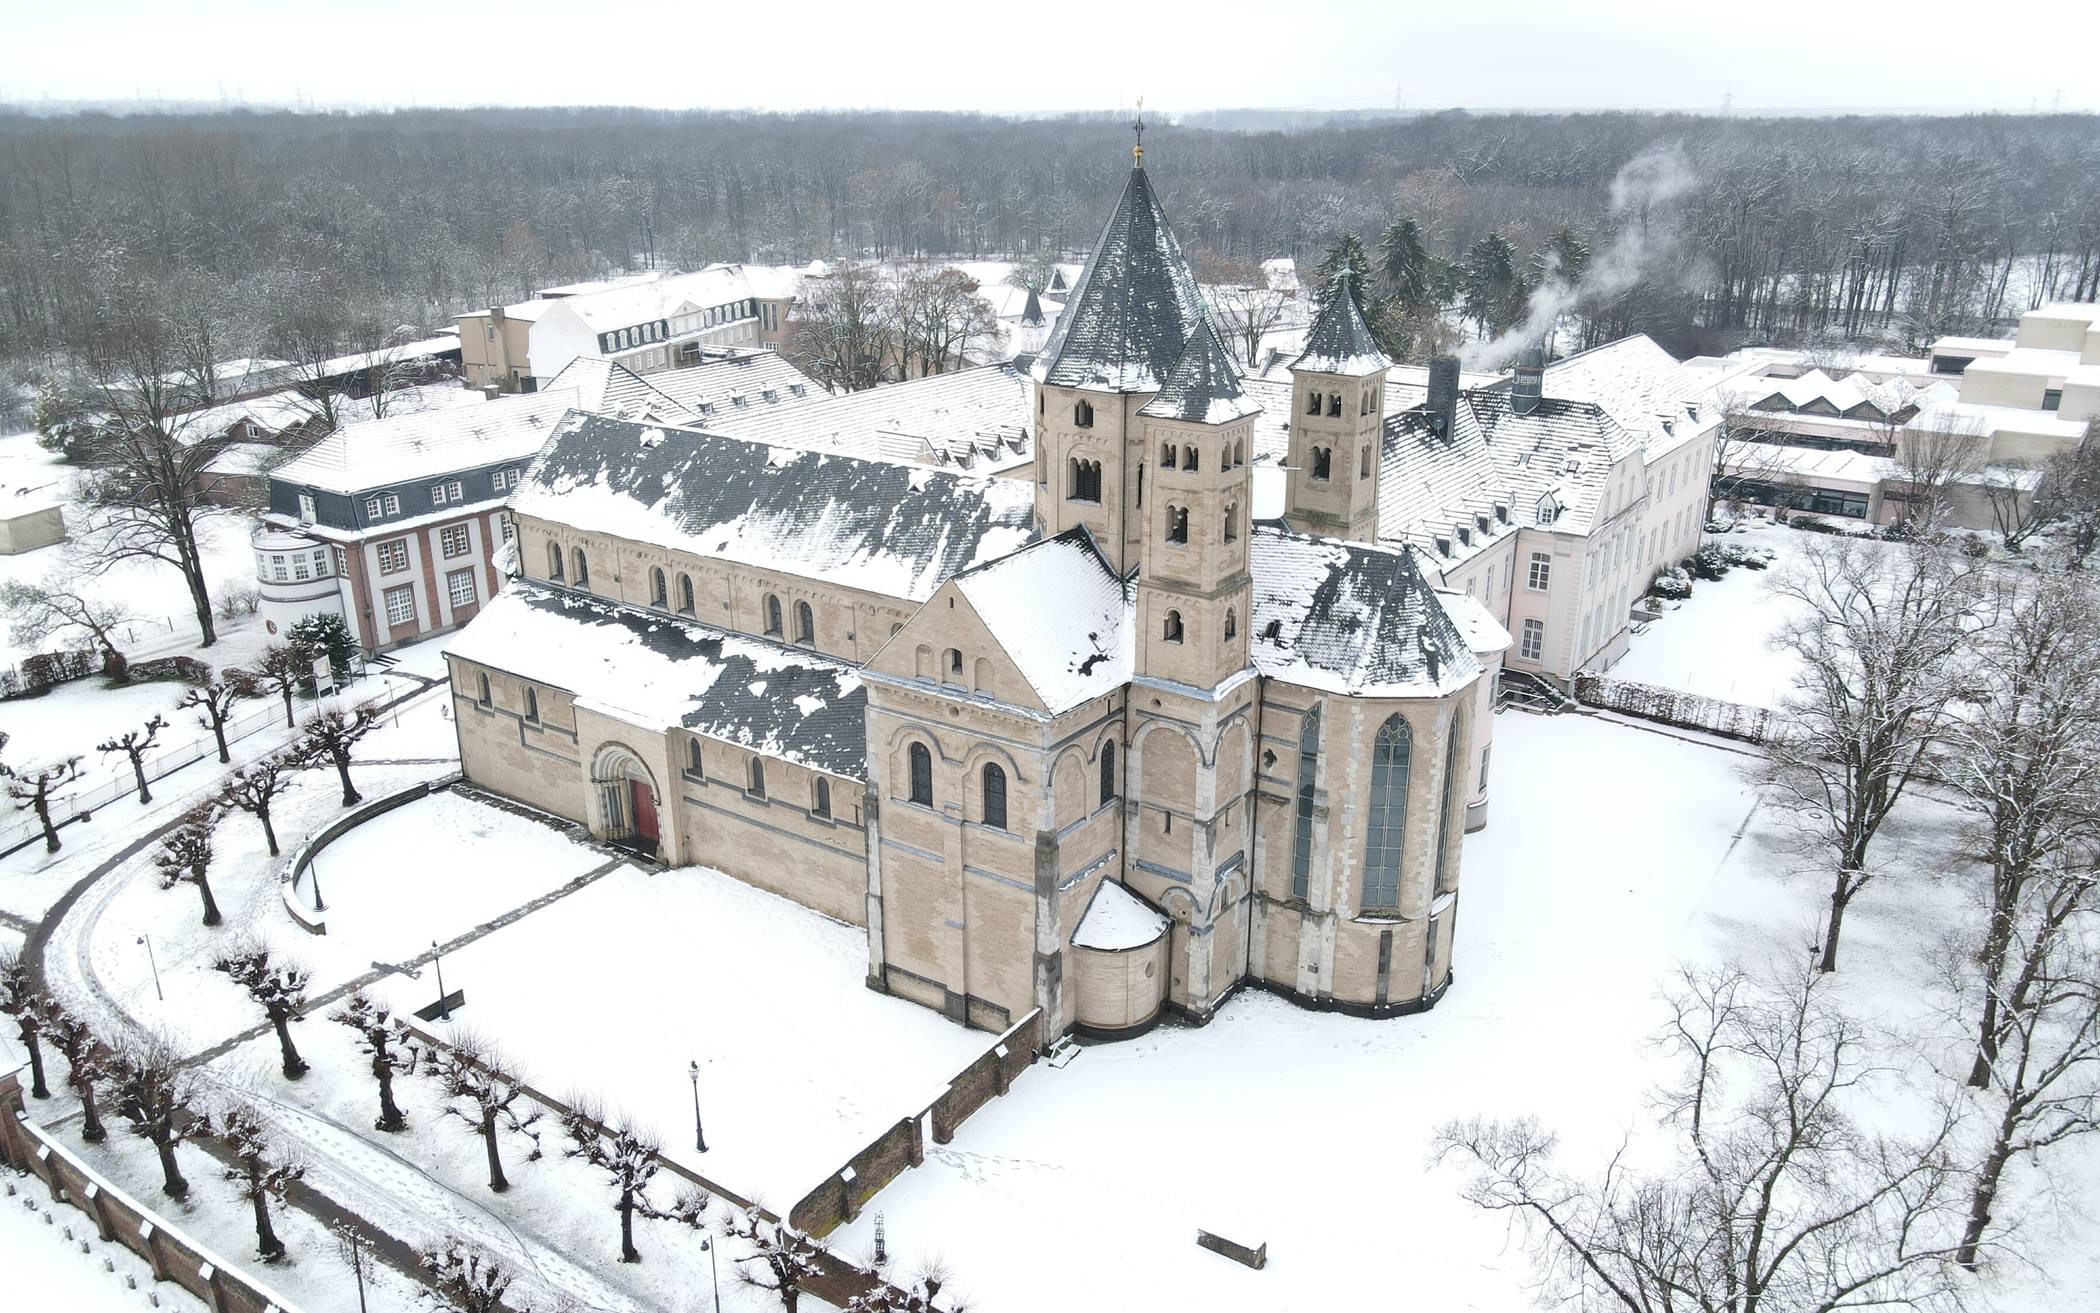  Auch in diesem Jahr veranstaltet der Rhein-Kreis Neuss einen Fotowettbewerb. Mit diesem Foto von Kloster Knechtsteden im Winter gehörte Stefan Schülgen aus Dormagen im vergangenen Jahr zu den Gewinnern. 